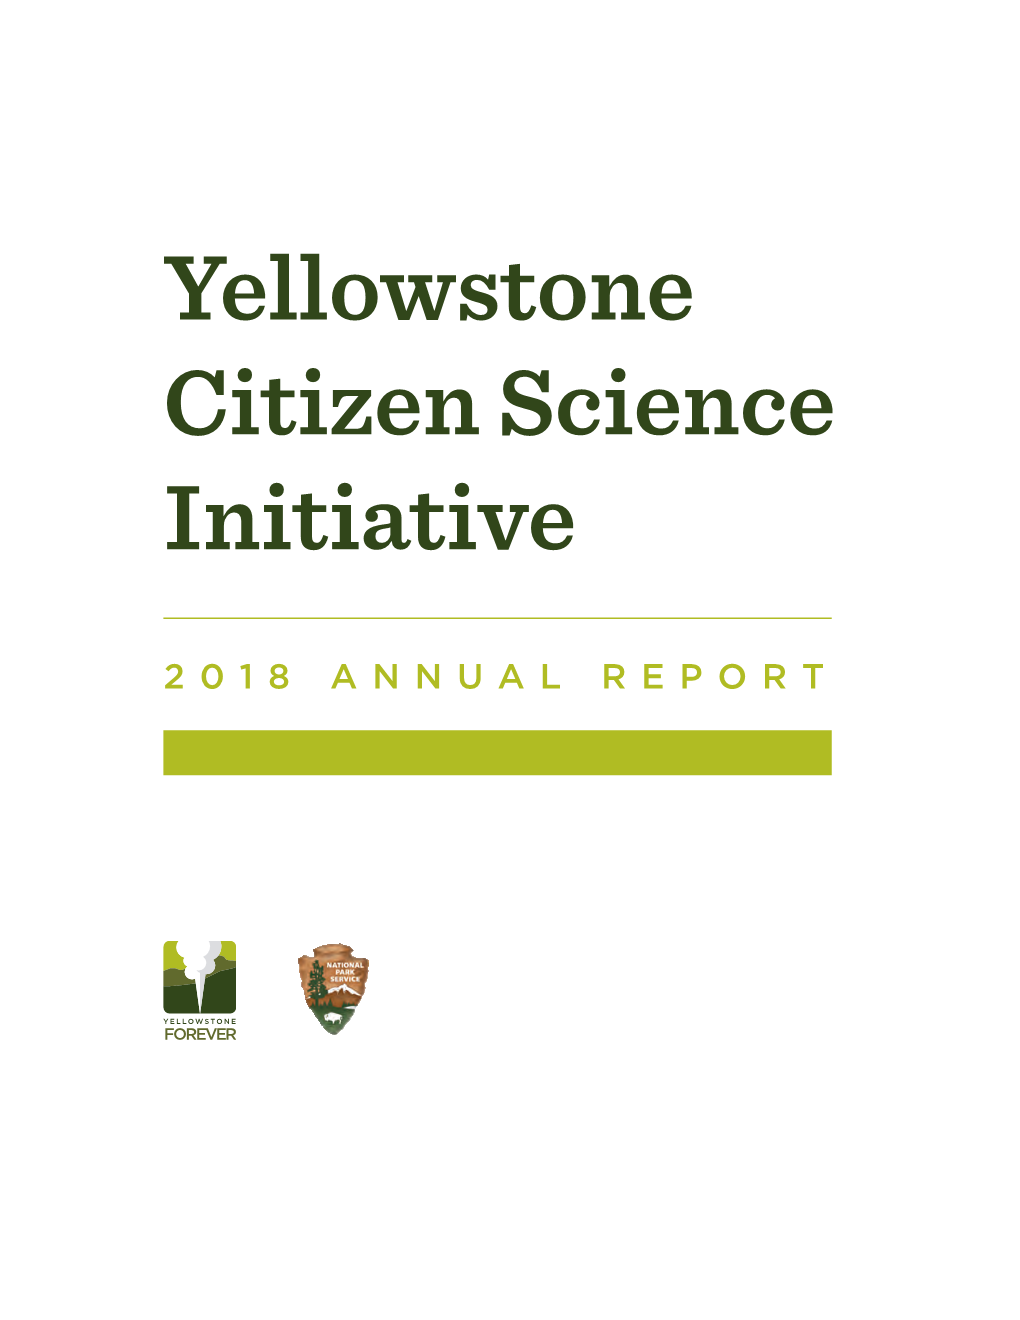 Yellowstone Citizen Science Initiative